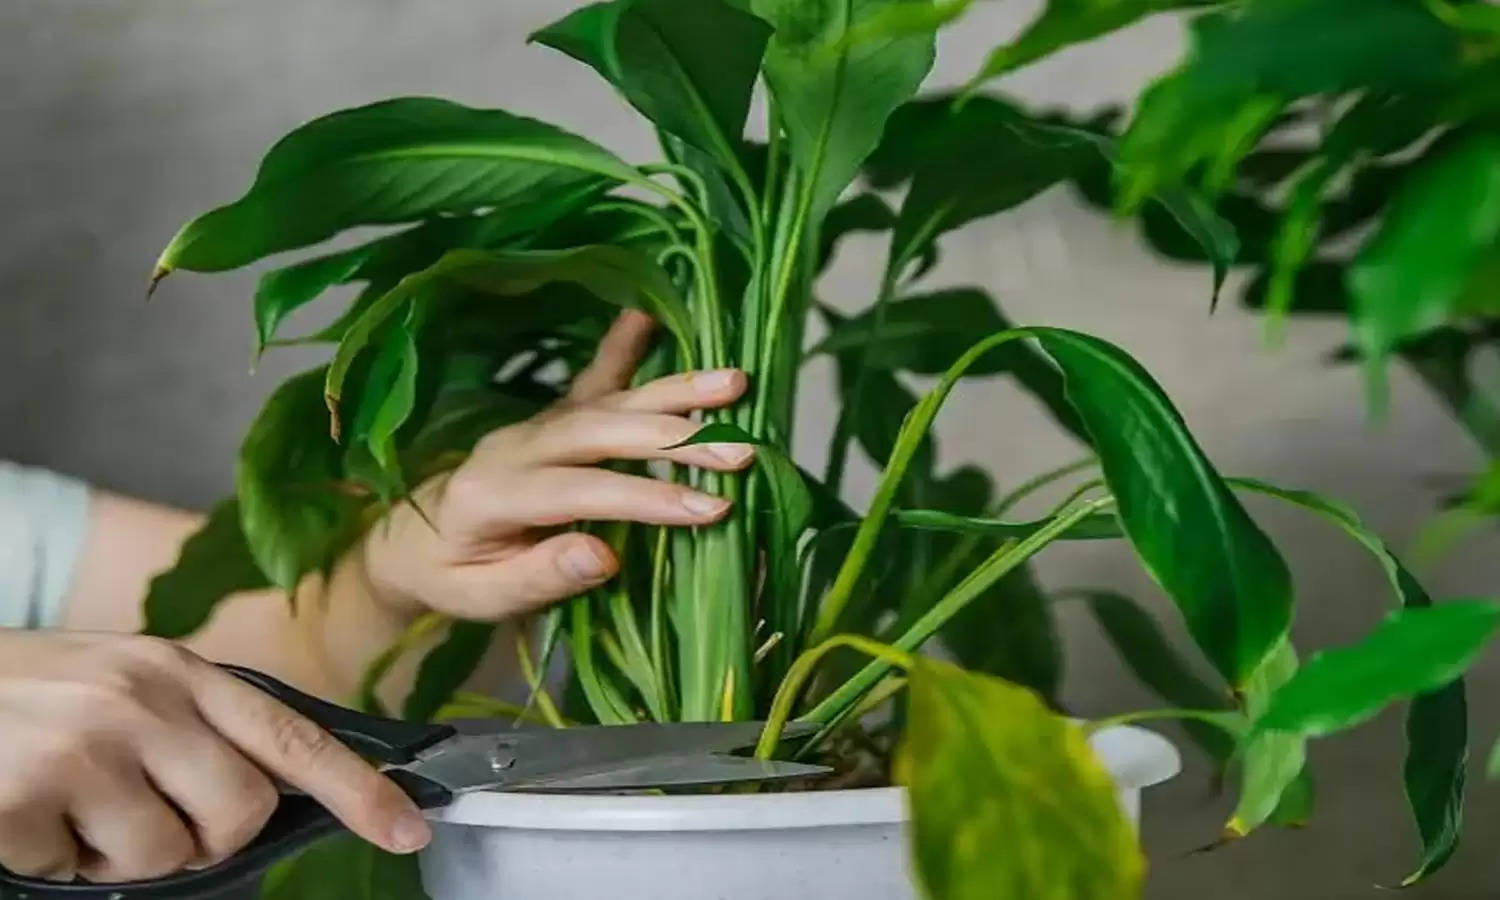 Unlucky Plants: यदि बिजनेस में हो रहा है नुकसान तो घर में भूलकर भी ना लगाएं ये 3 पौधे, वरना हो जायेंगे कंगाल! जरूर सोचें